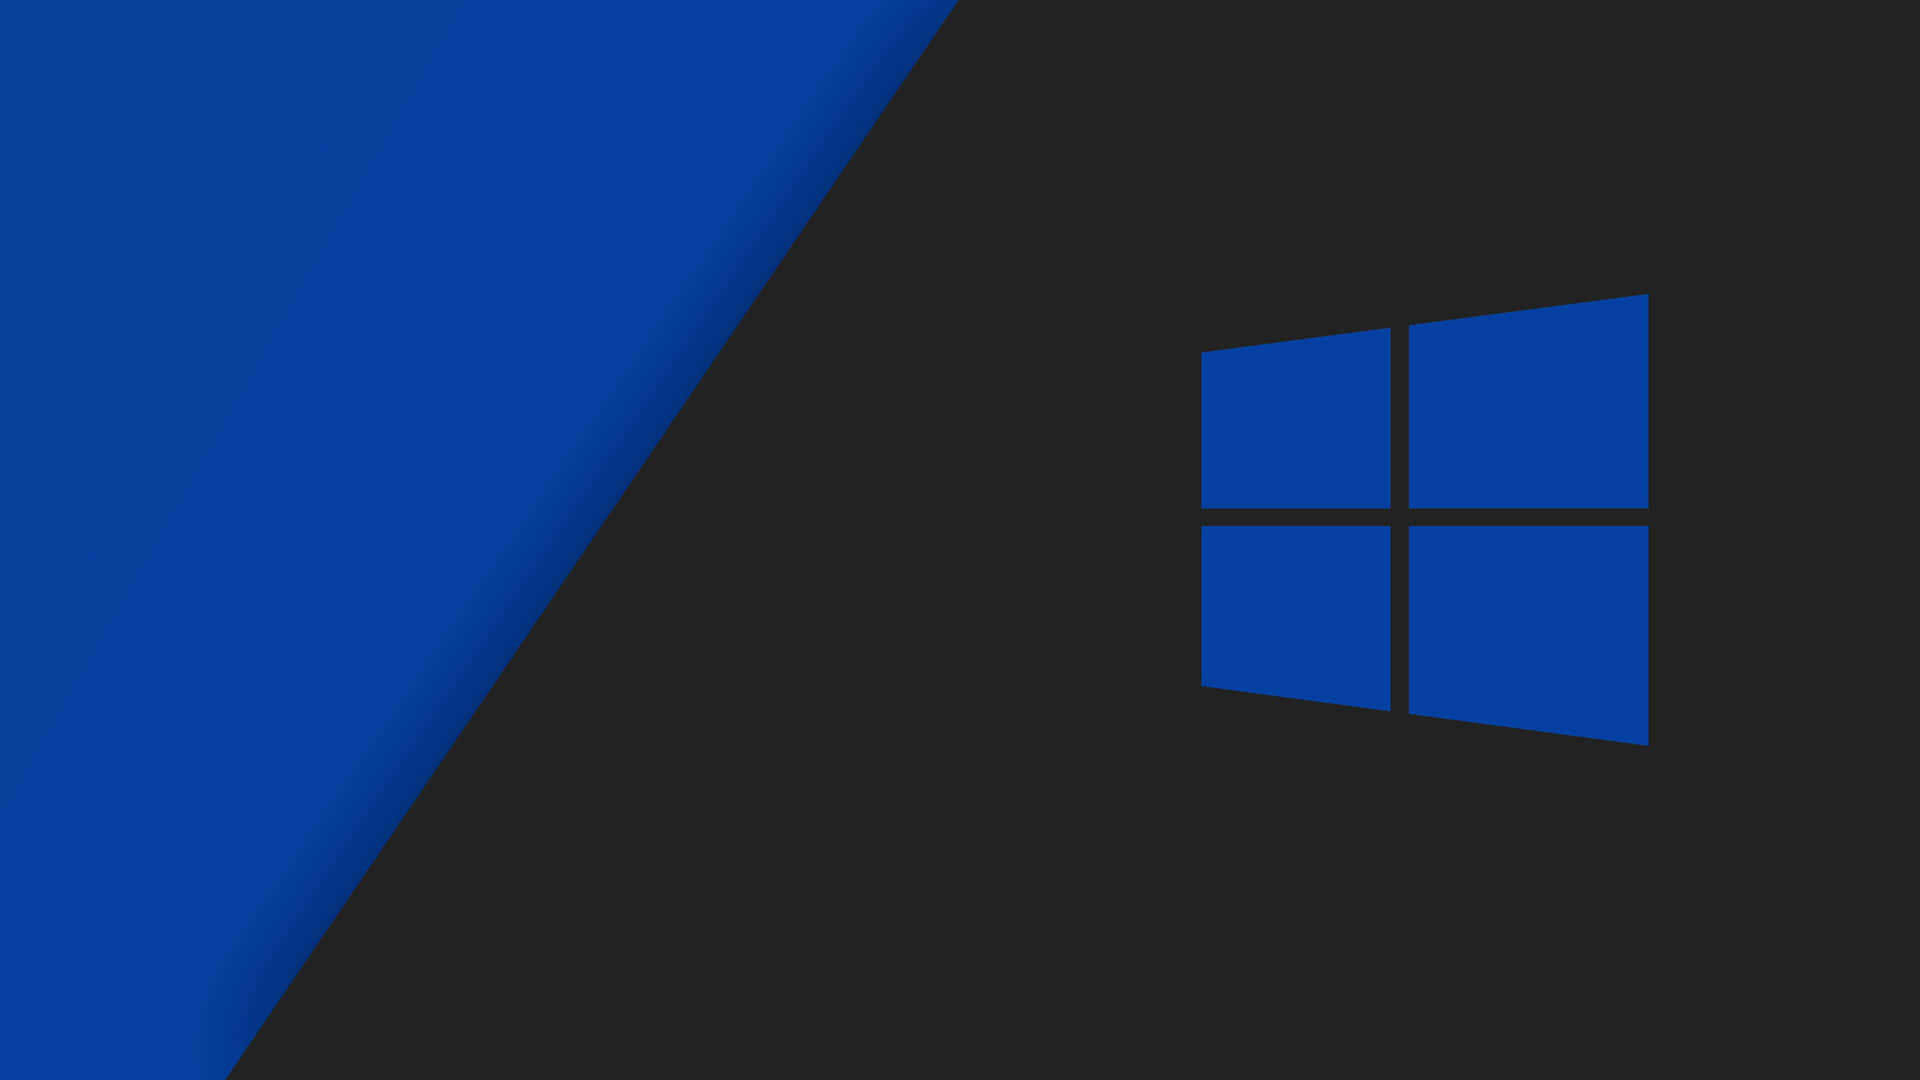 Logode Windows 10 Con Fondo Azul Y Negro. Fondo de pantalla